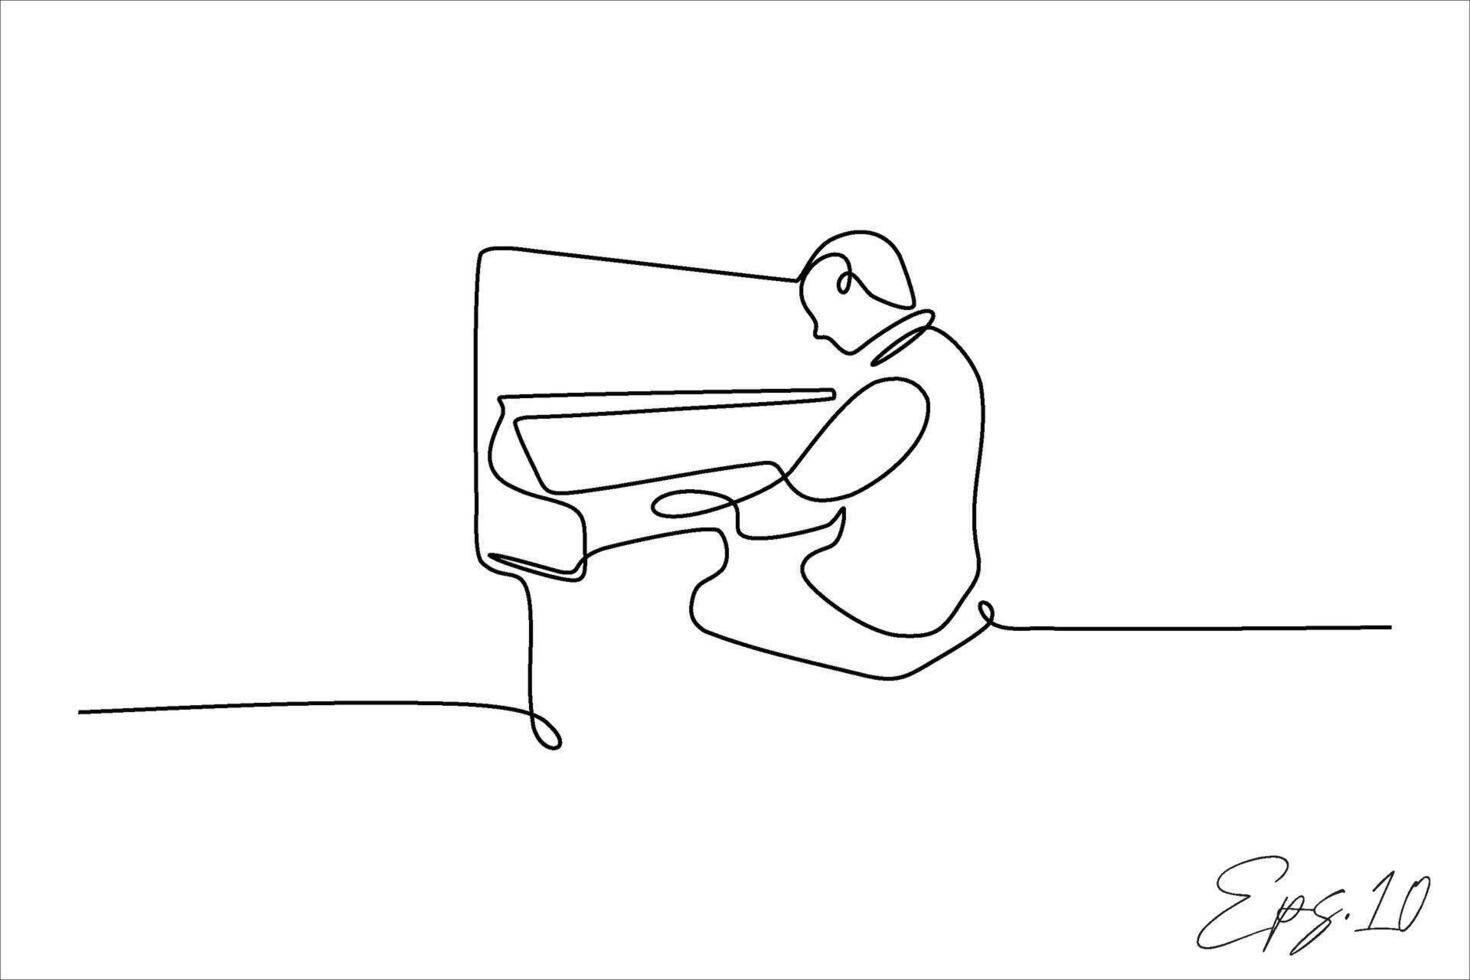 continuo linea vettore illustrazione design di persona giocando il pianoforte